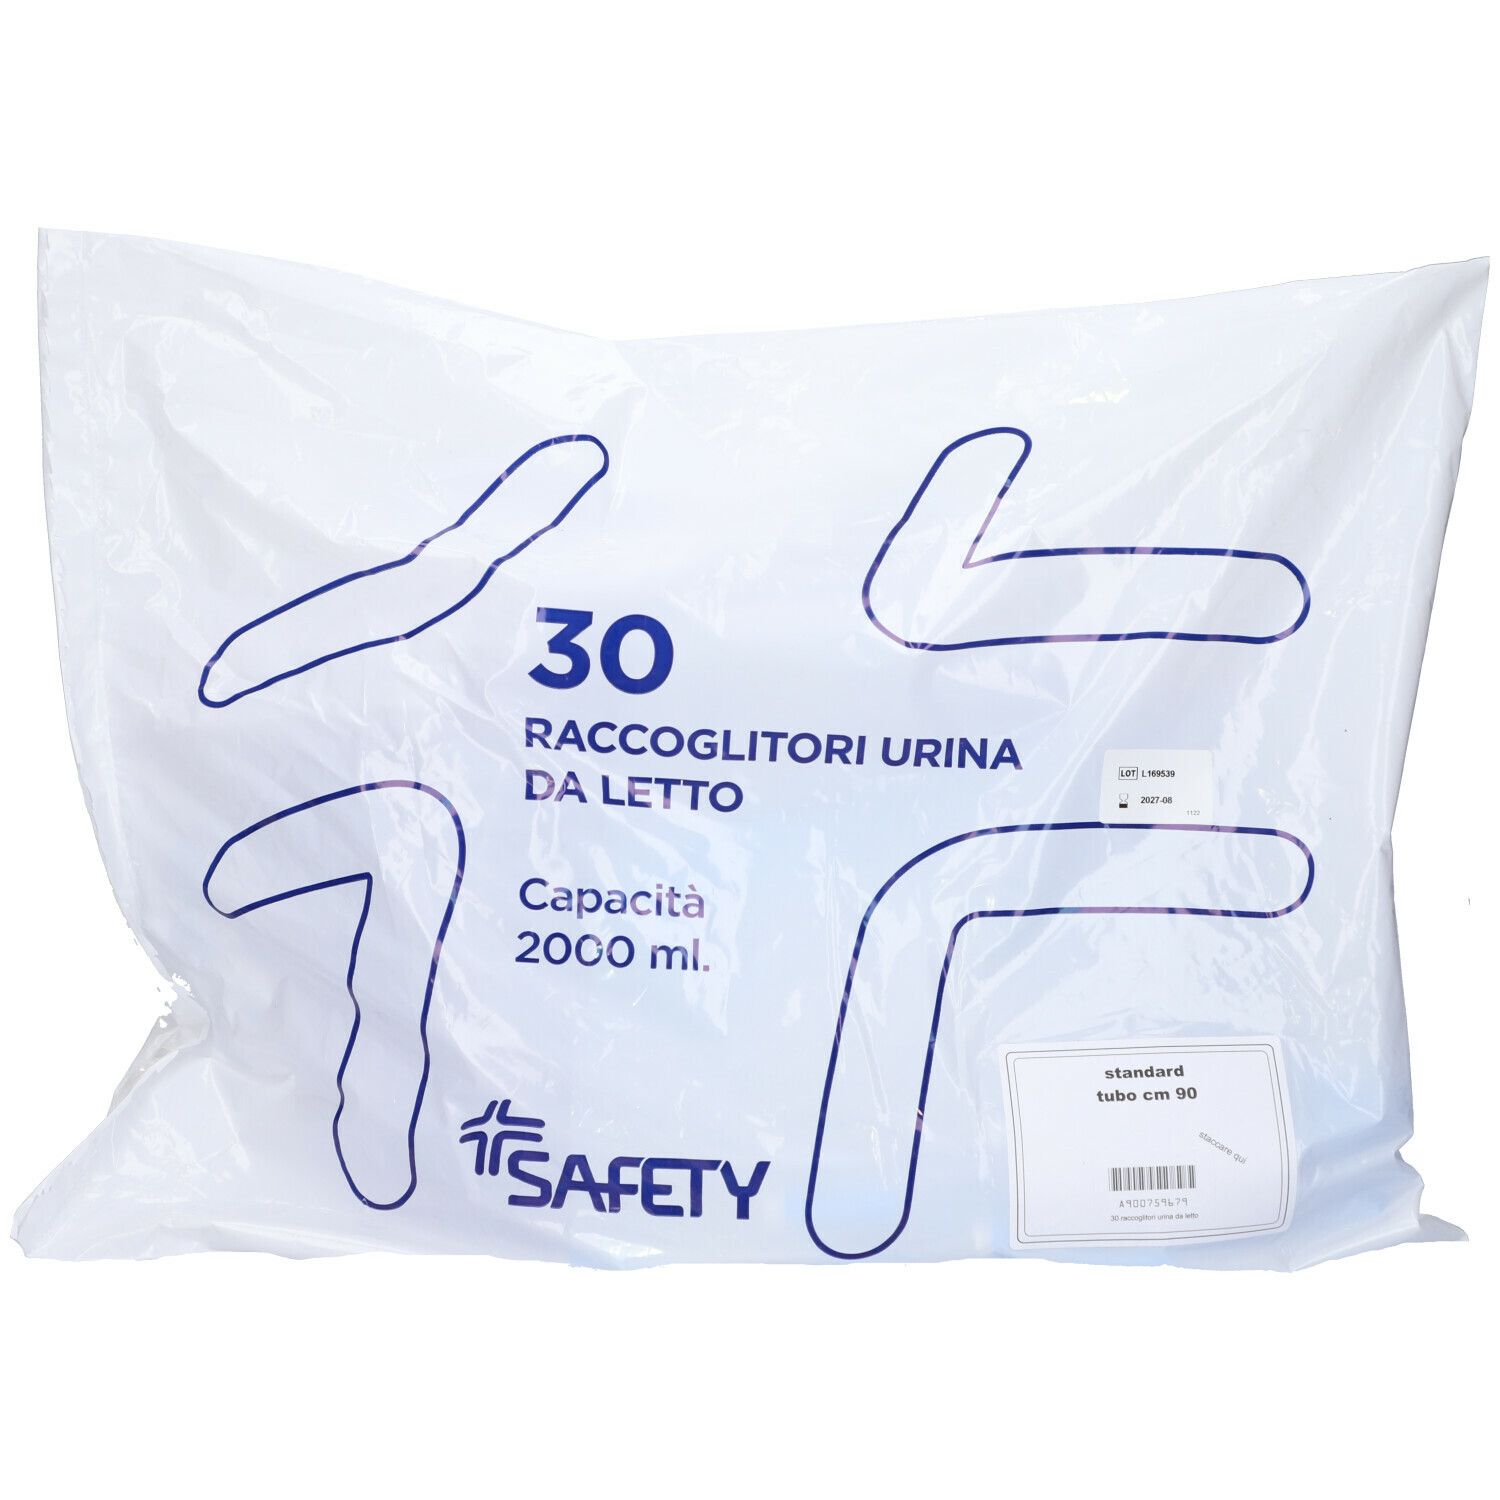 Safety Raccoglitori Urina da letto con tubo da 90 cm